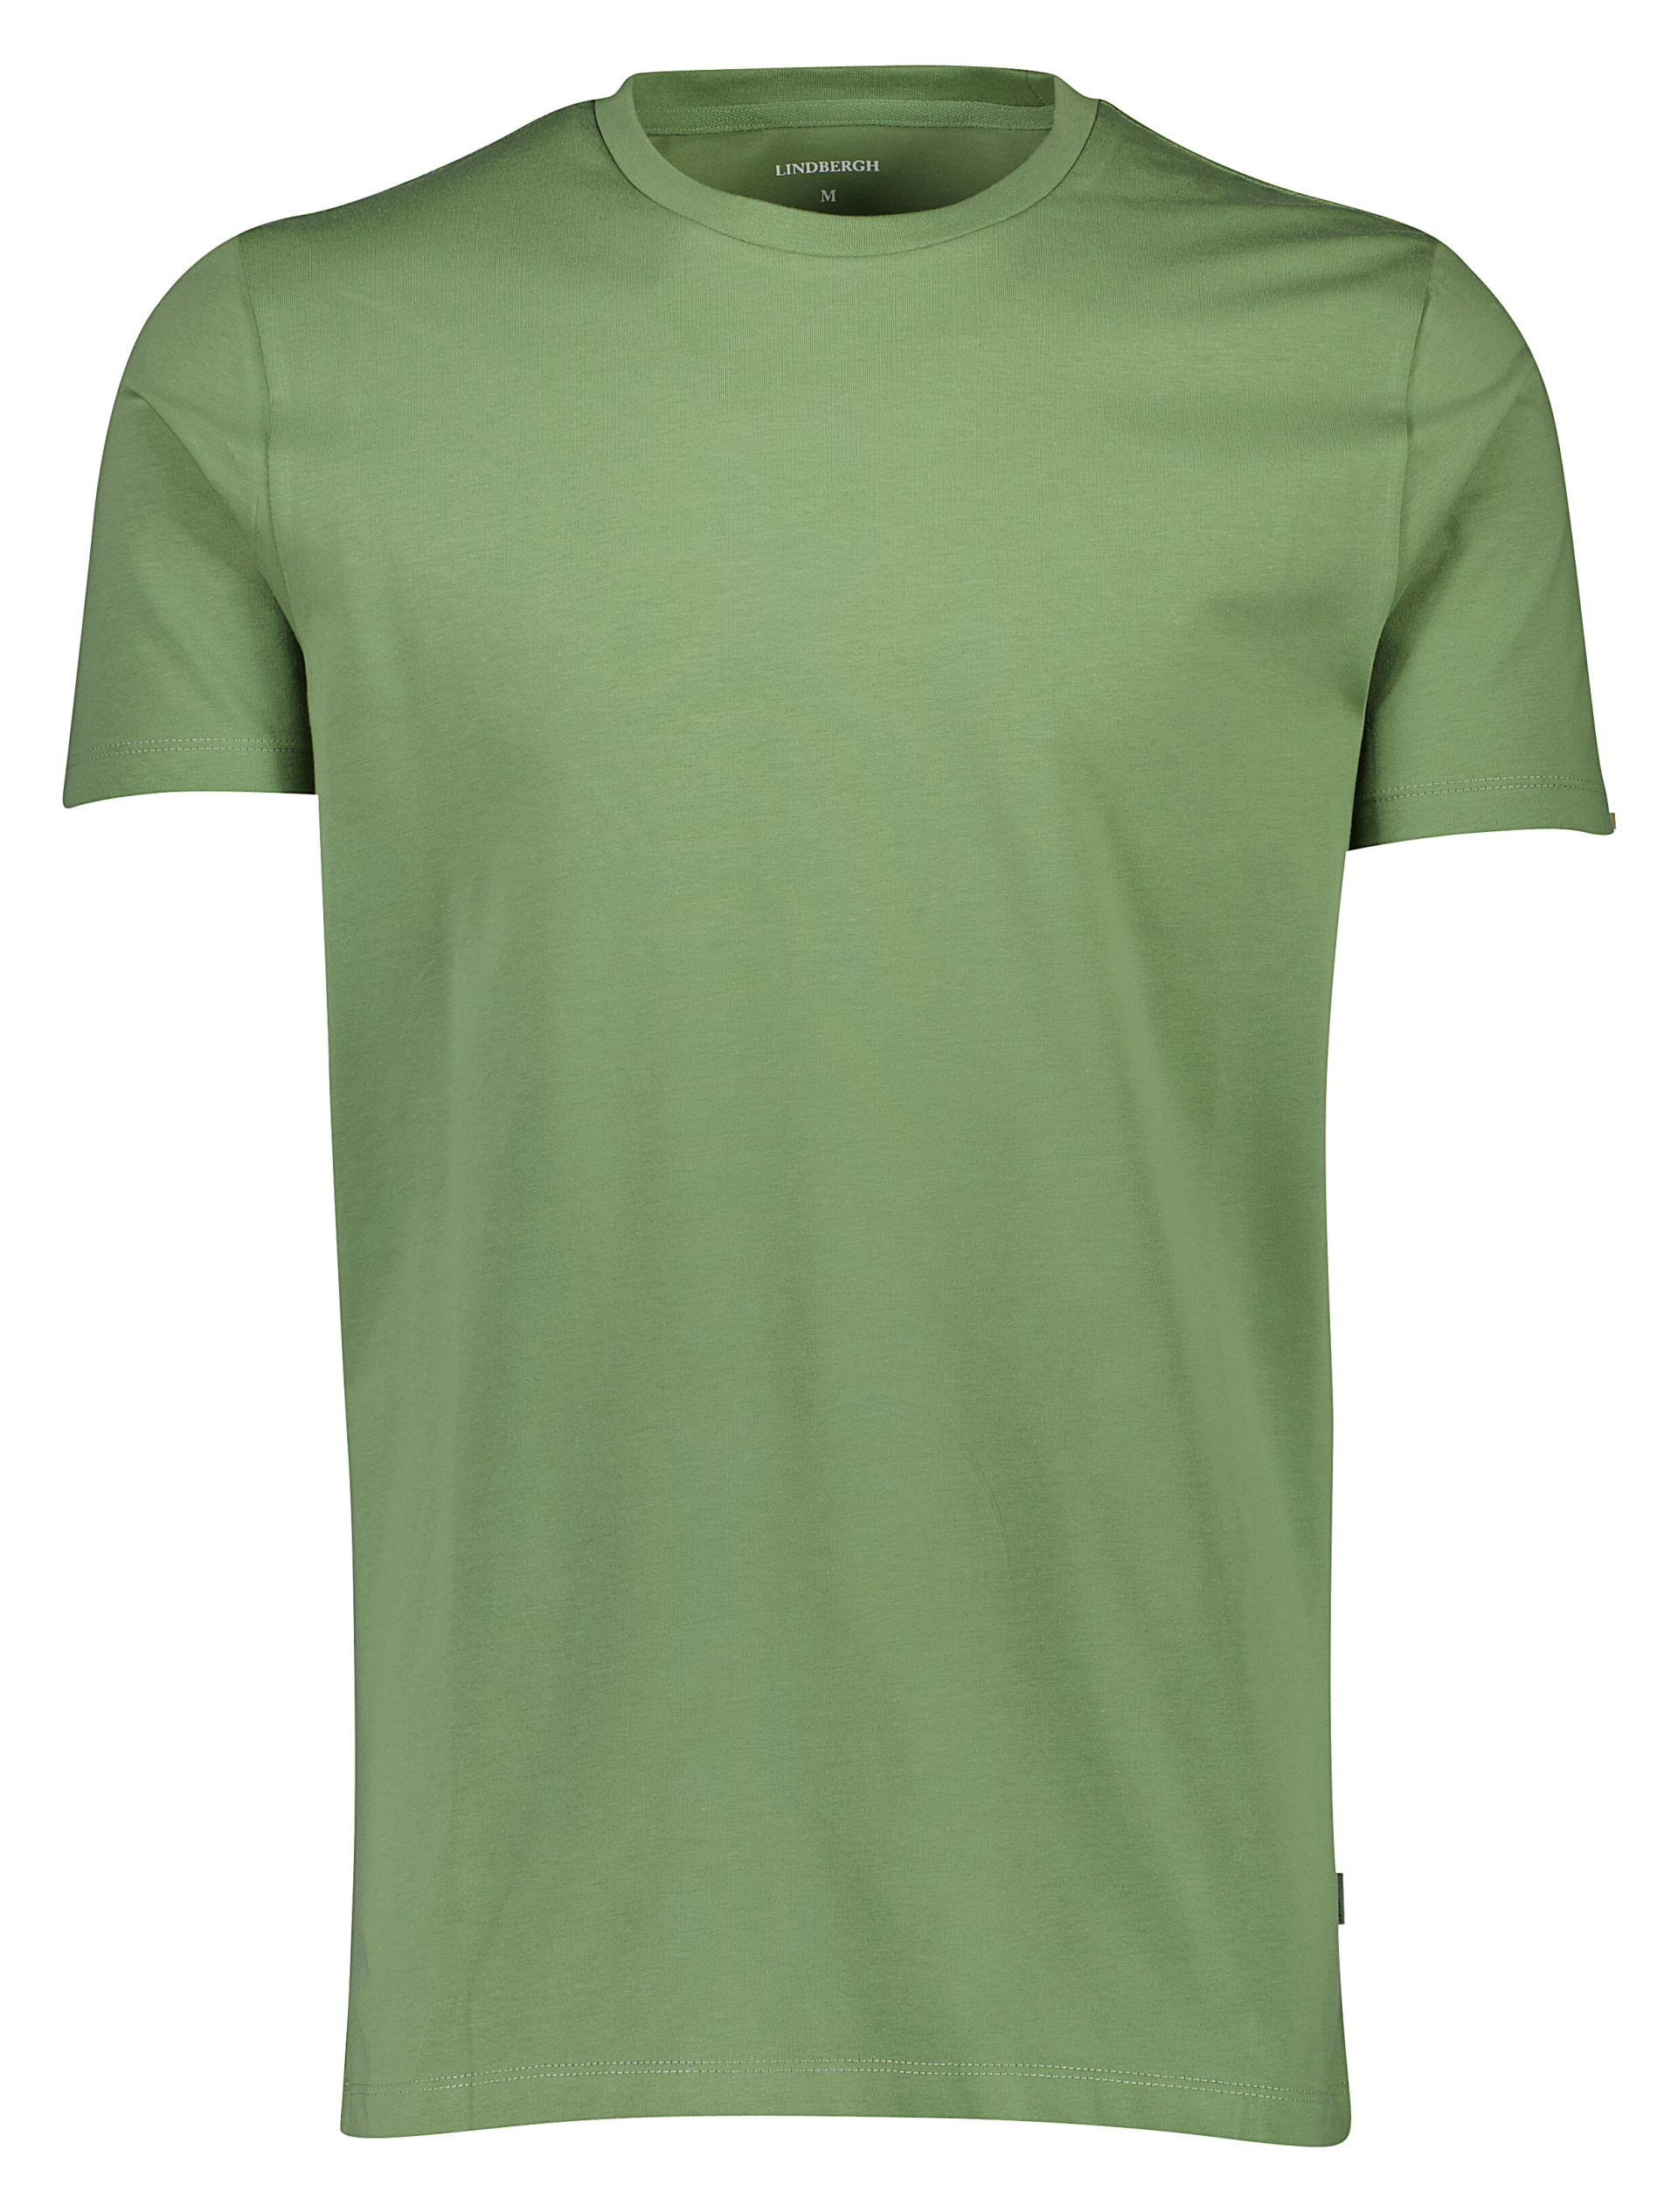 Lindbergh T-shirt grøn / mid green